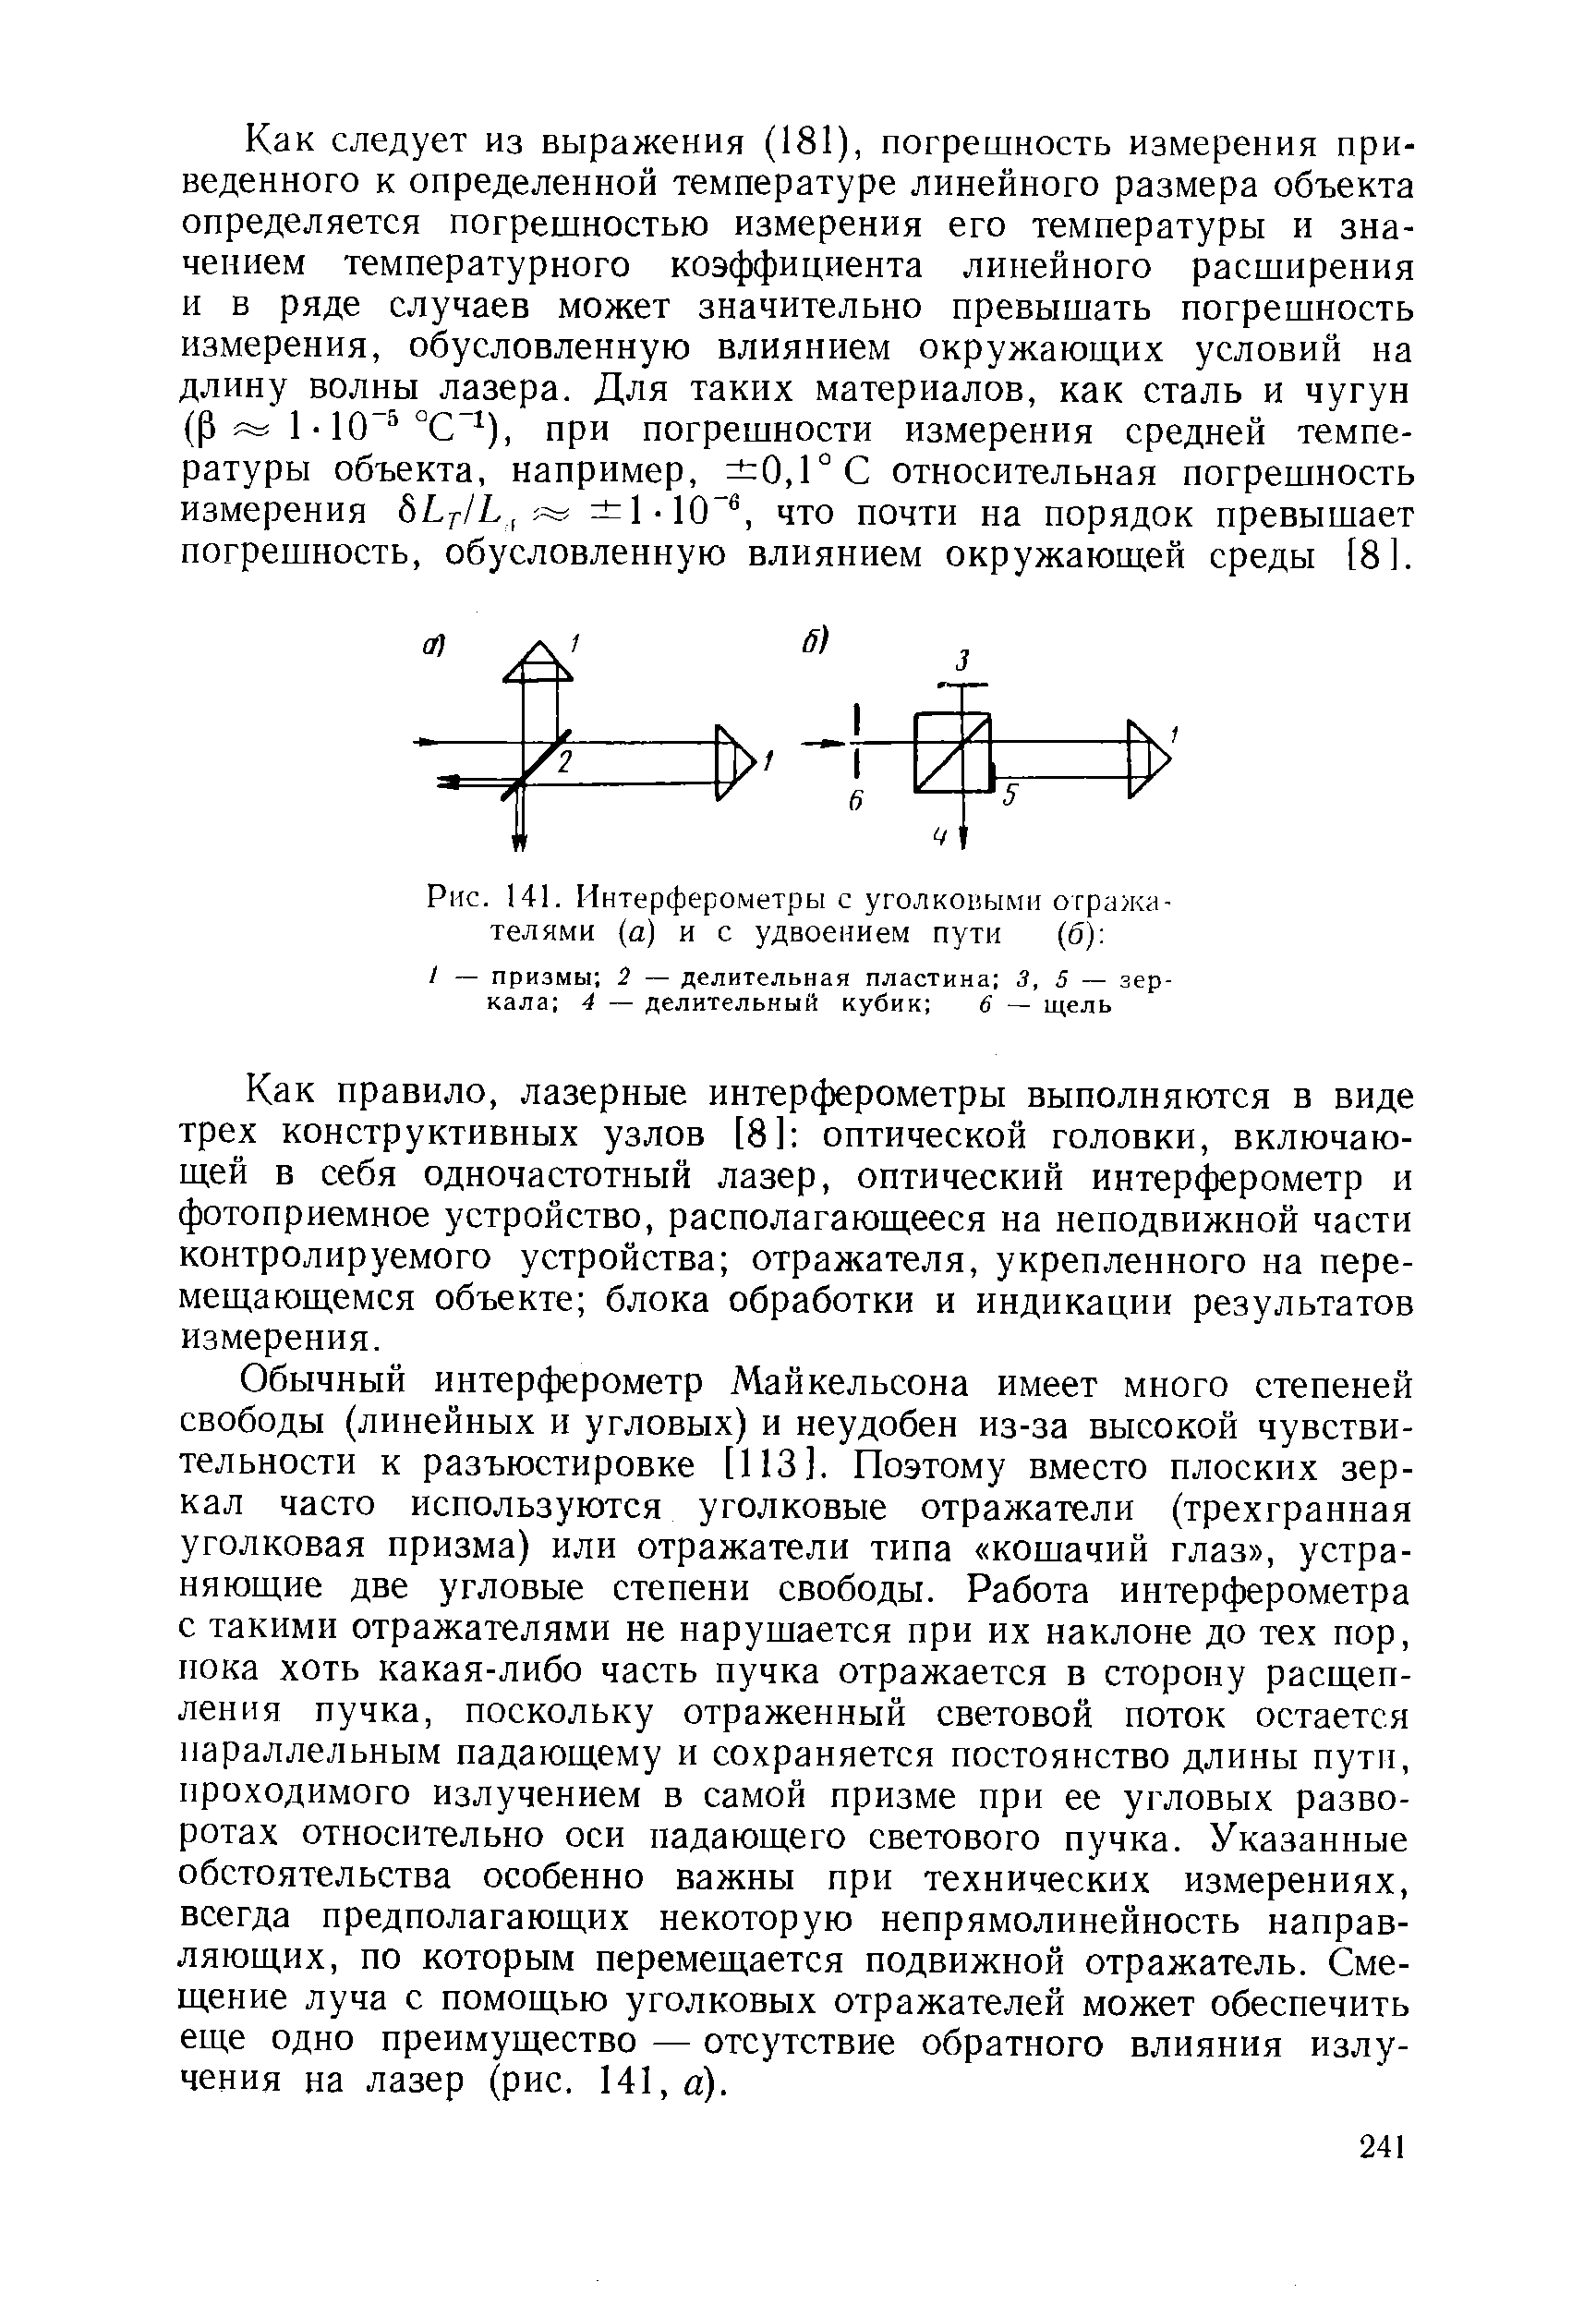 Рис. 141. Интерферометры с уголковыми отражателями (а) и с удвоением пути (б) 
